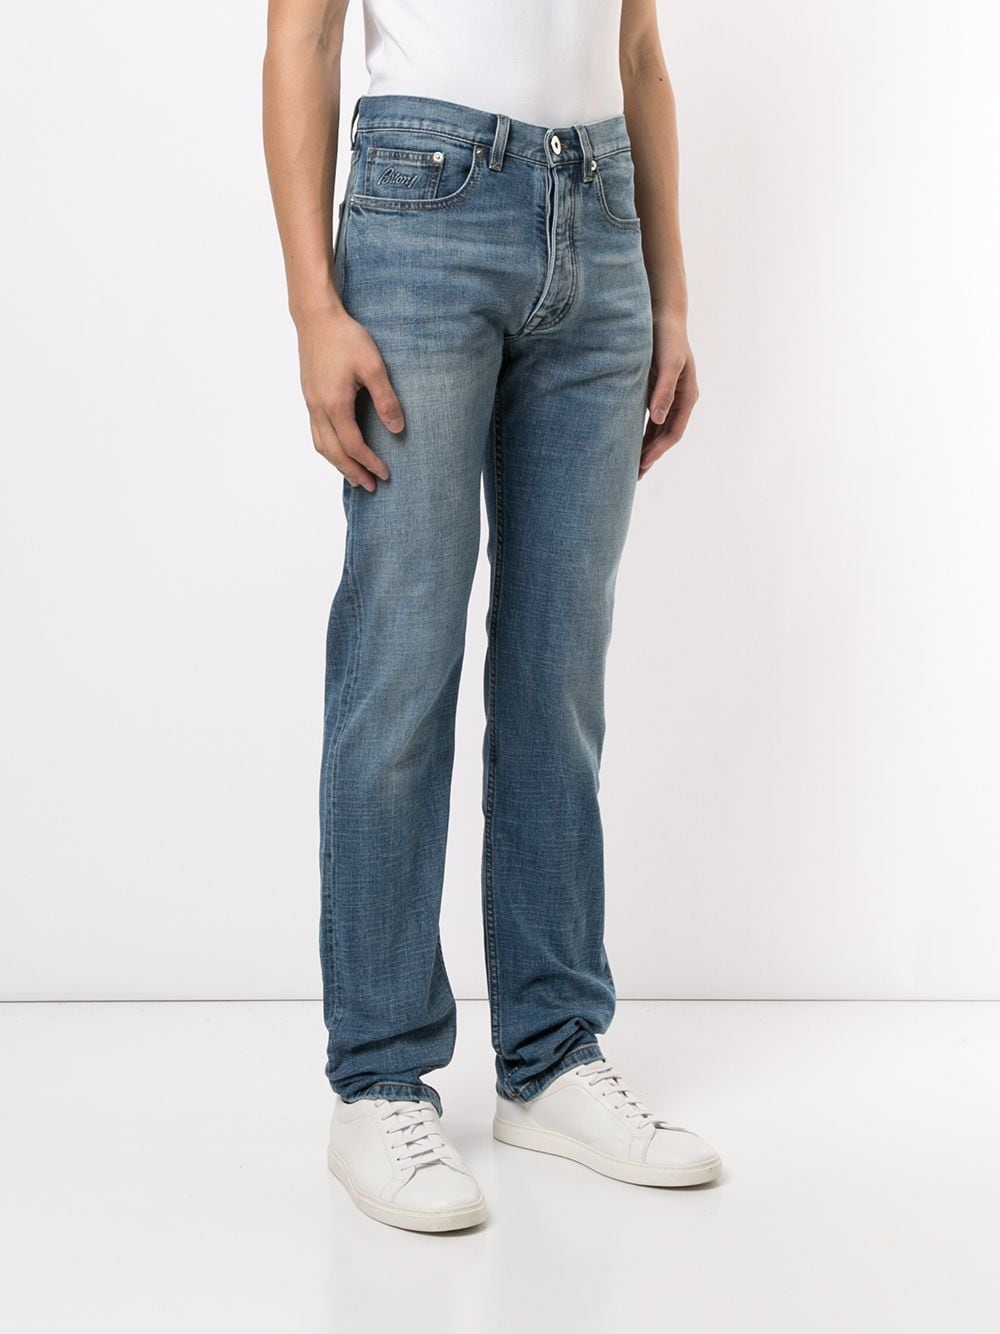 фото Brioni джинсы стандартного кроя